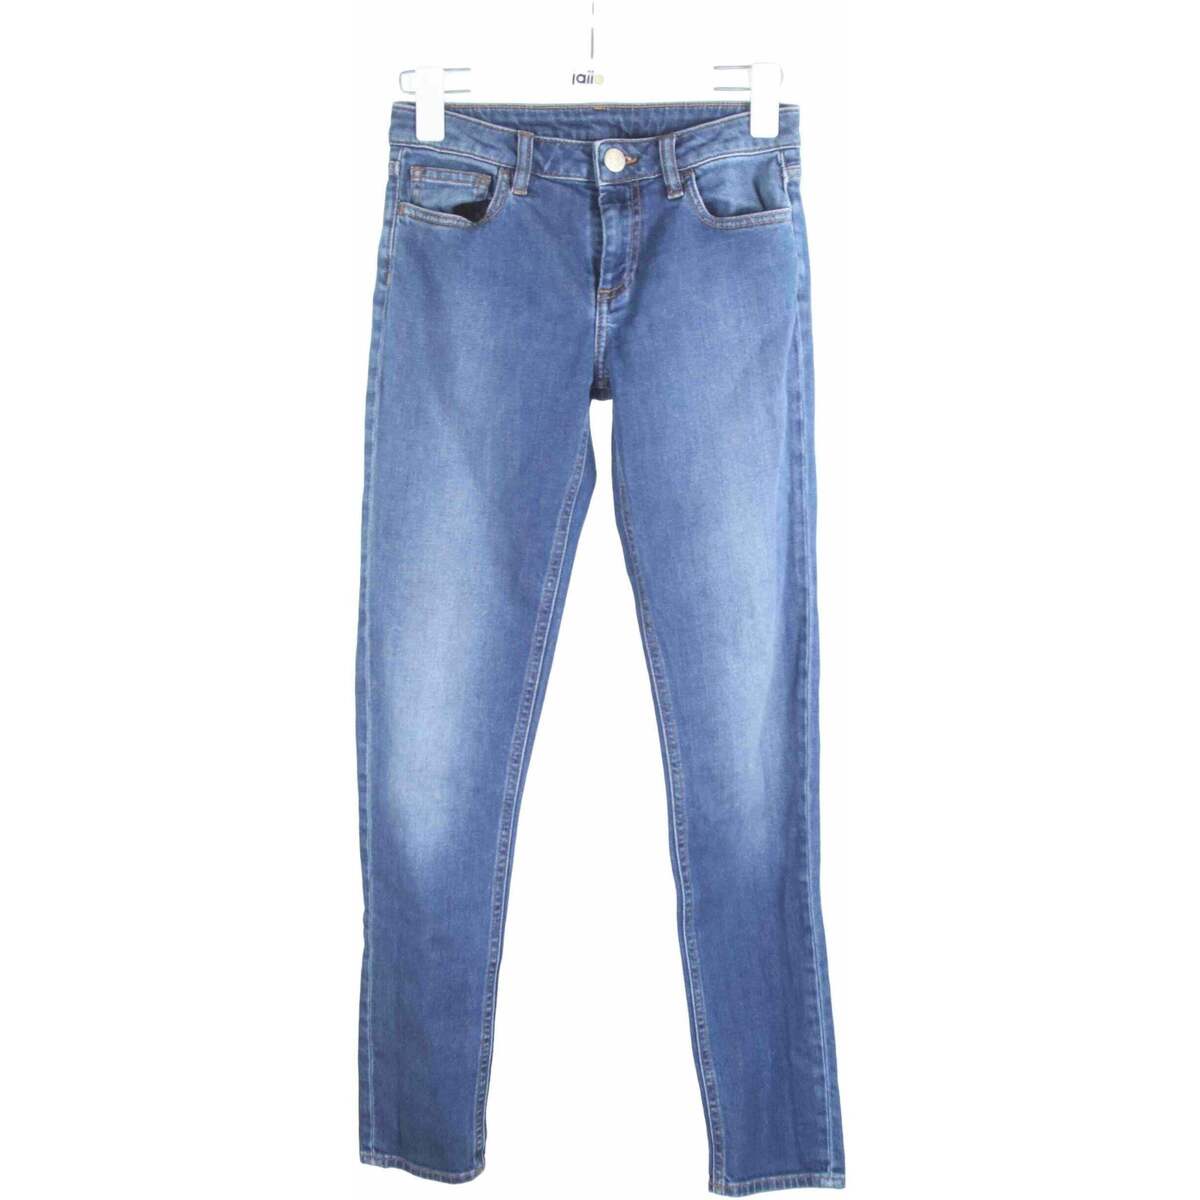 Vêtements Femme fringed stripe shorts Jean en coton Bleu